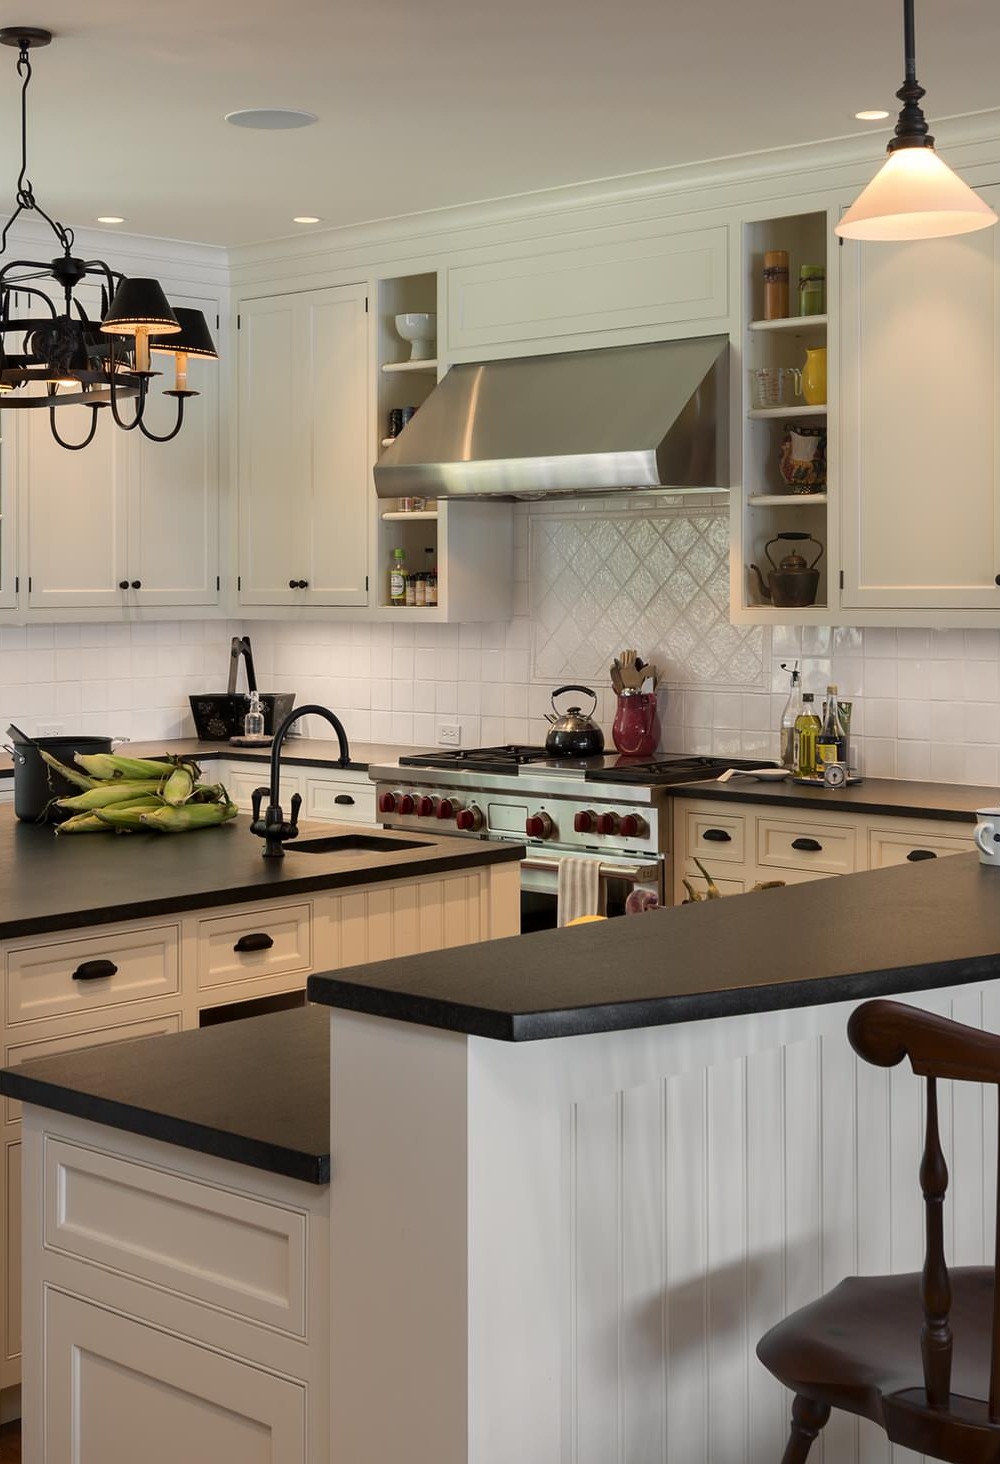 Absolute Black Honed Granite Countertops White Cabinets Tile Backsplash Dark Floor